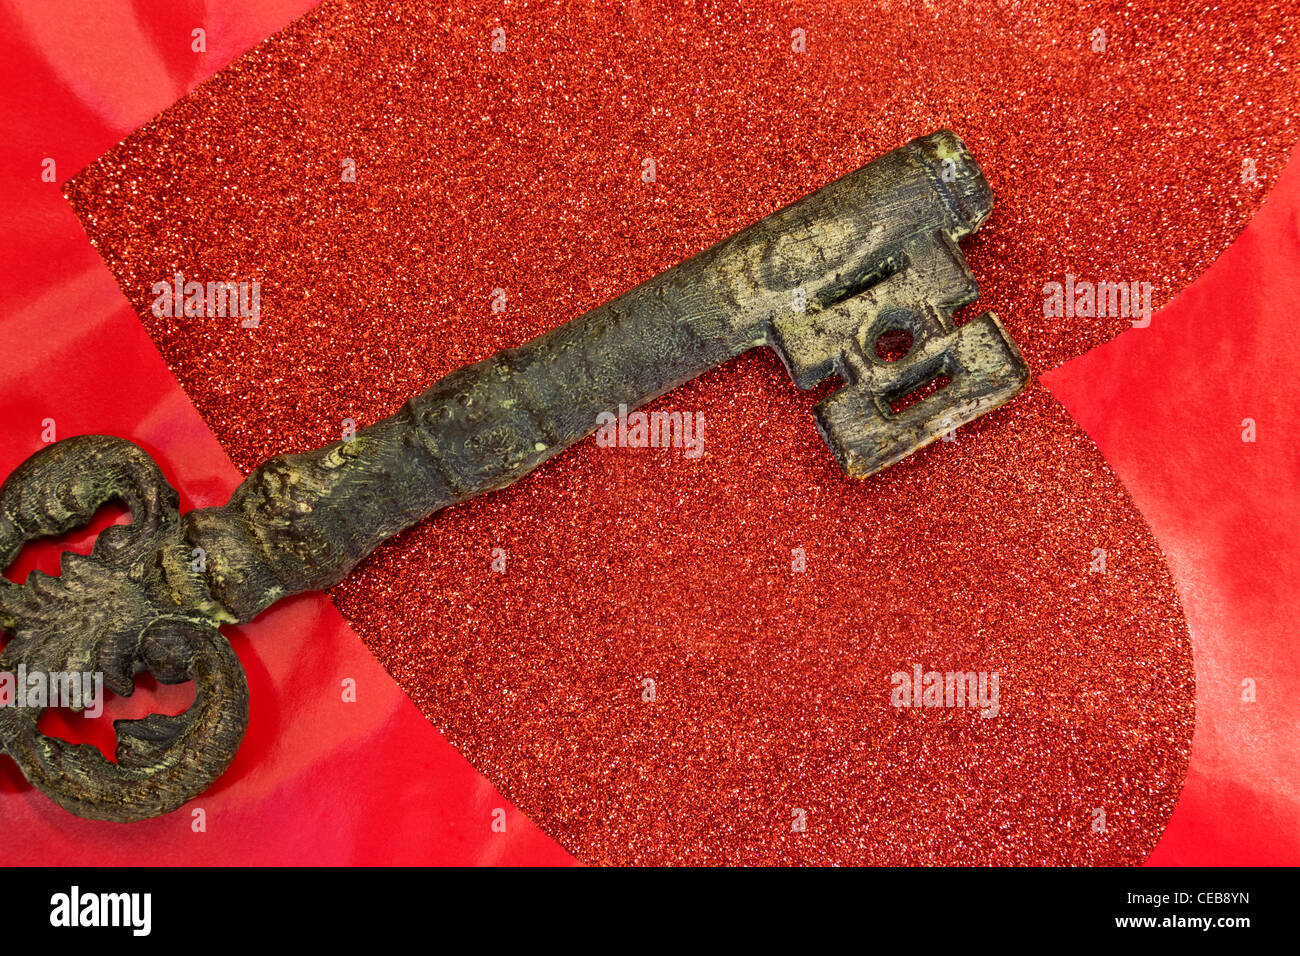 Reich verzierte Schlüssel über rotes Herz gelegt. Stockfoto